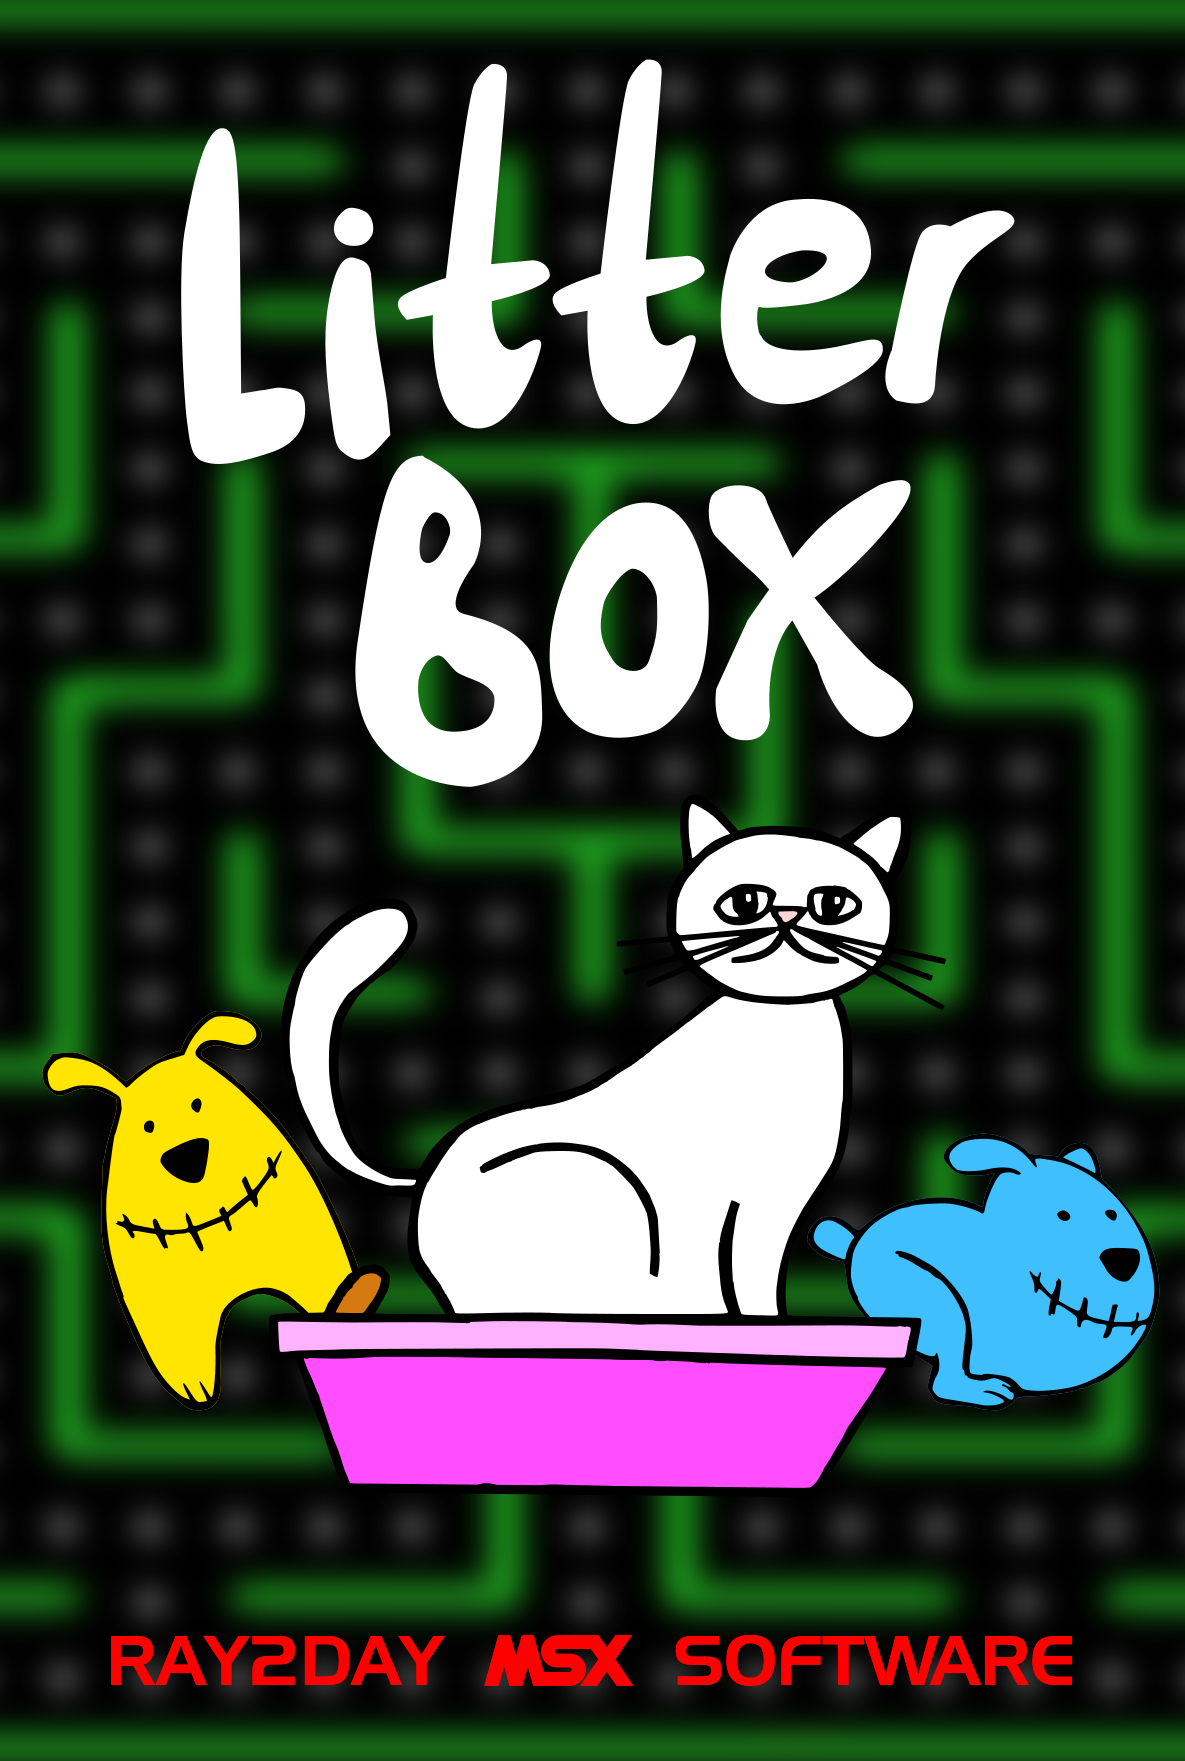 MSX Litter Box